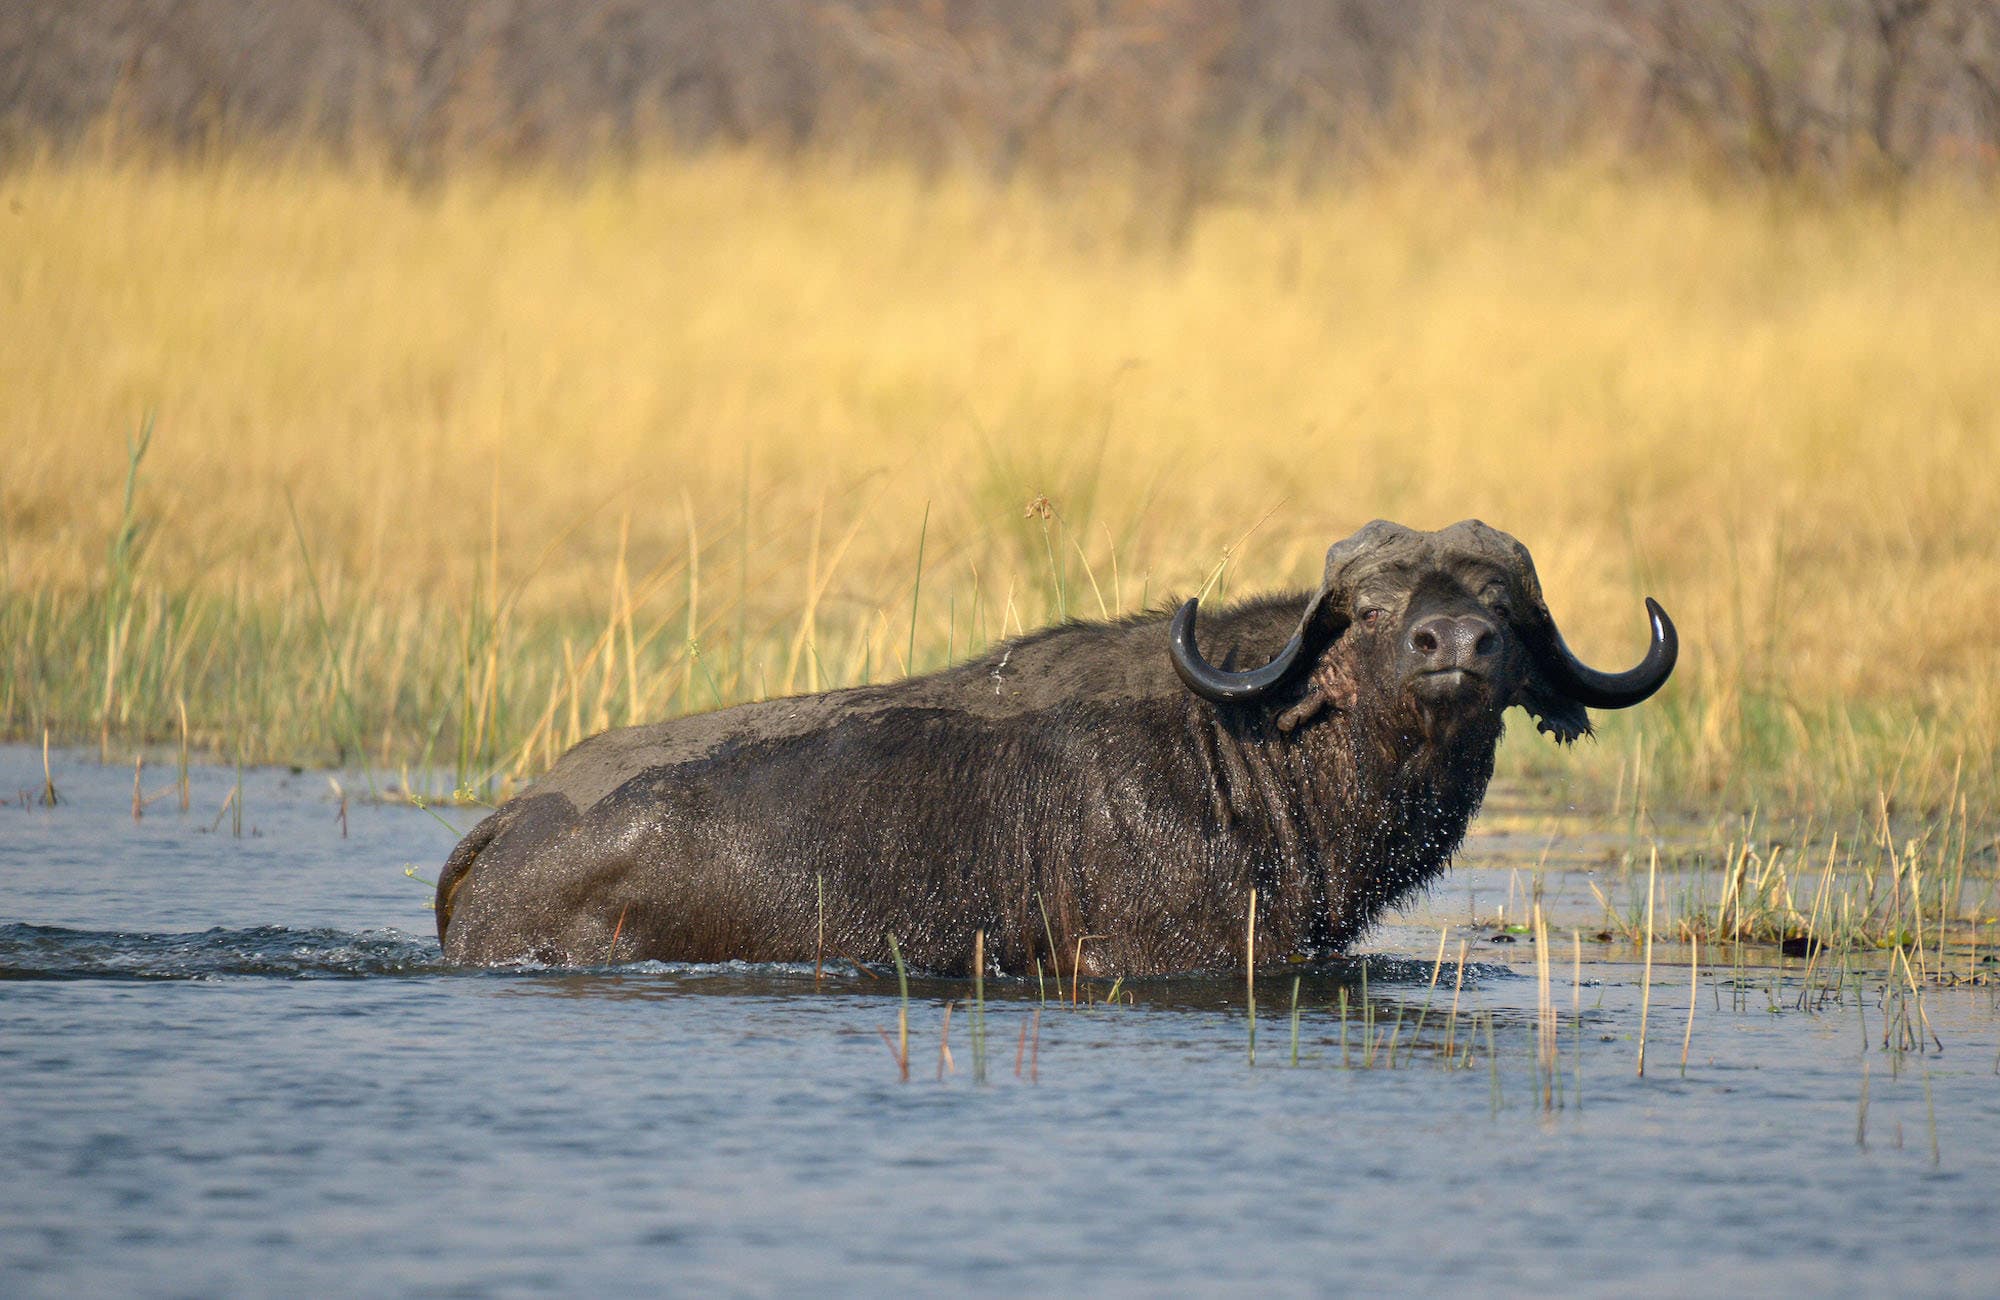 Buffalo in River